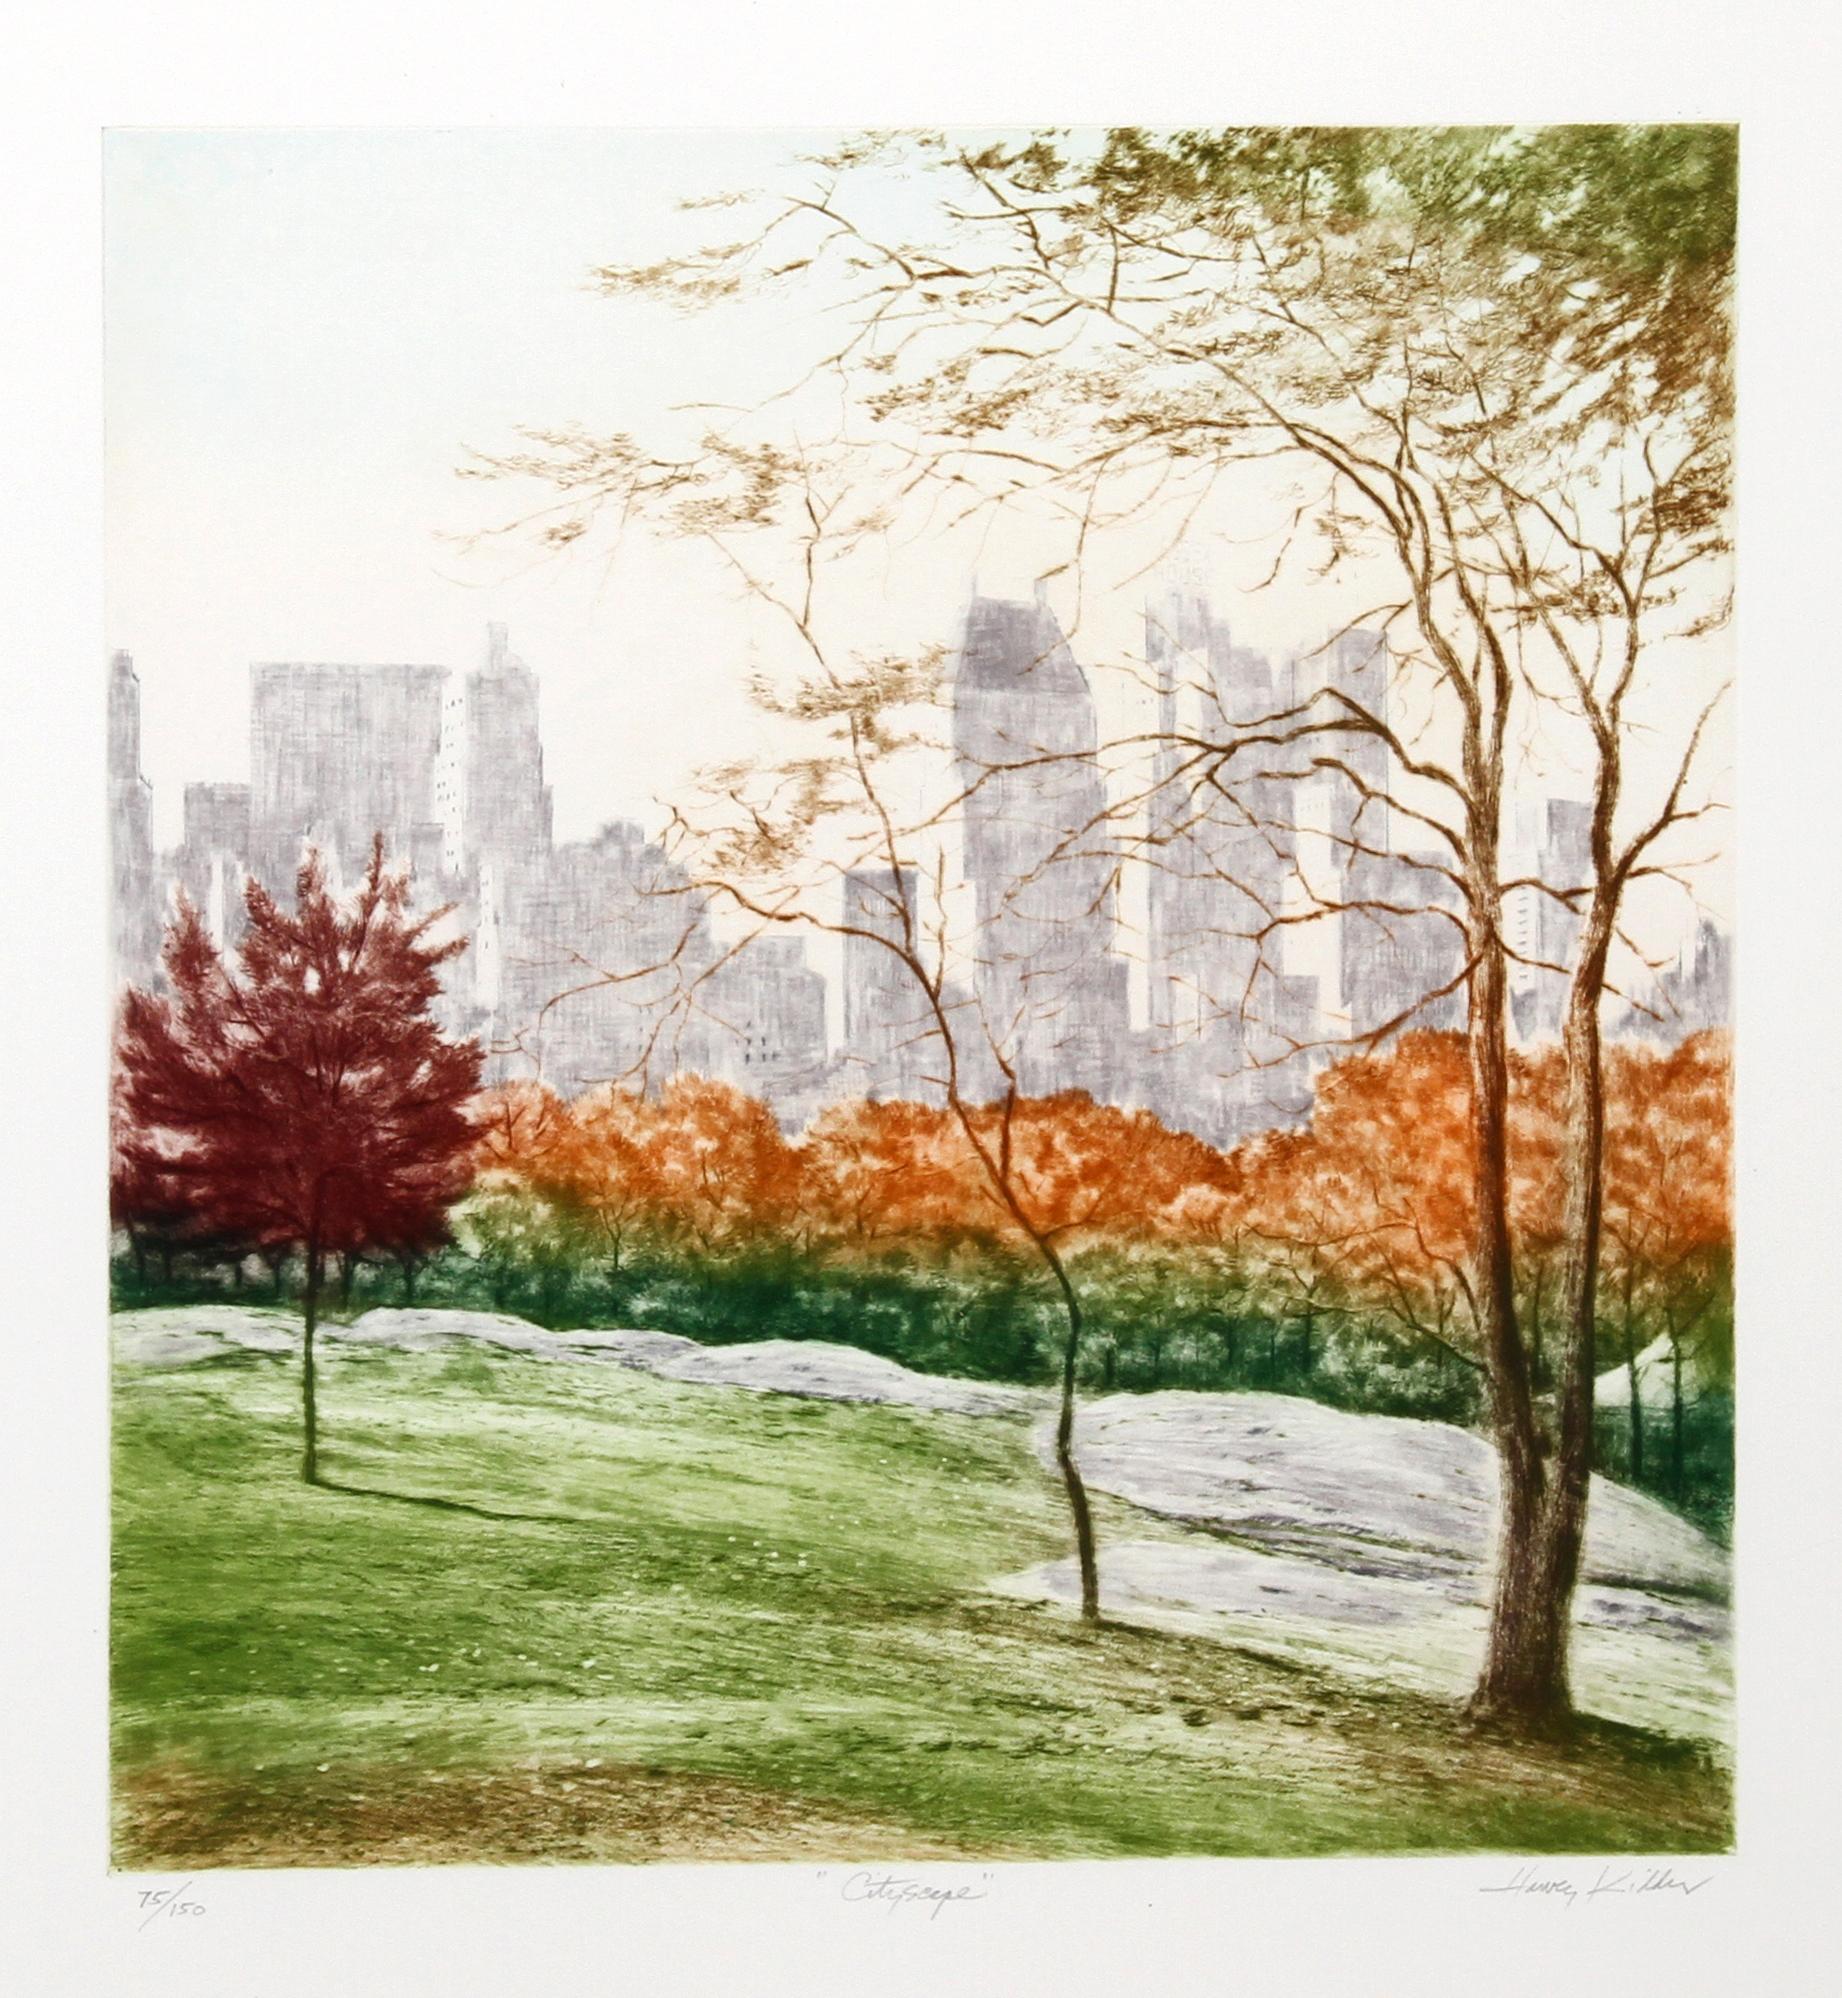 Paysage urbain
Harvey Kidder, Américain (1918-2001)
Date : vers 1985
Aquatinte et gravure, signée et numérotée au crayon
Edition de 150
Taille de l'image : 19 x 18 pouces
Taille : 76,2 x 55,88 cm (30 x 22 in.)